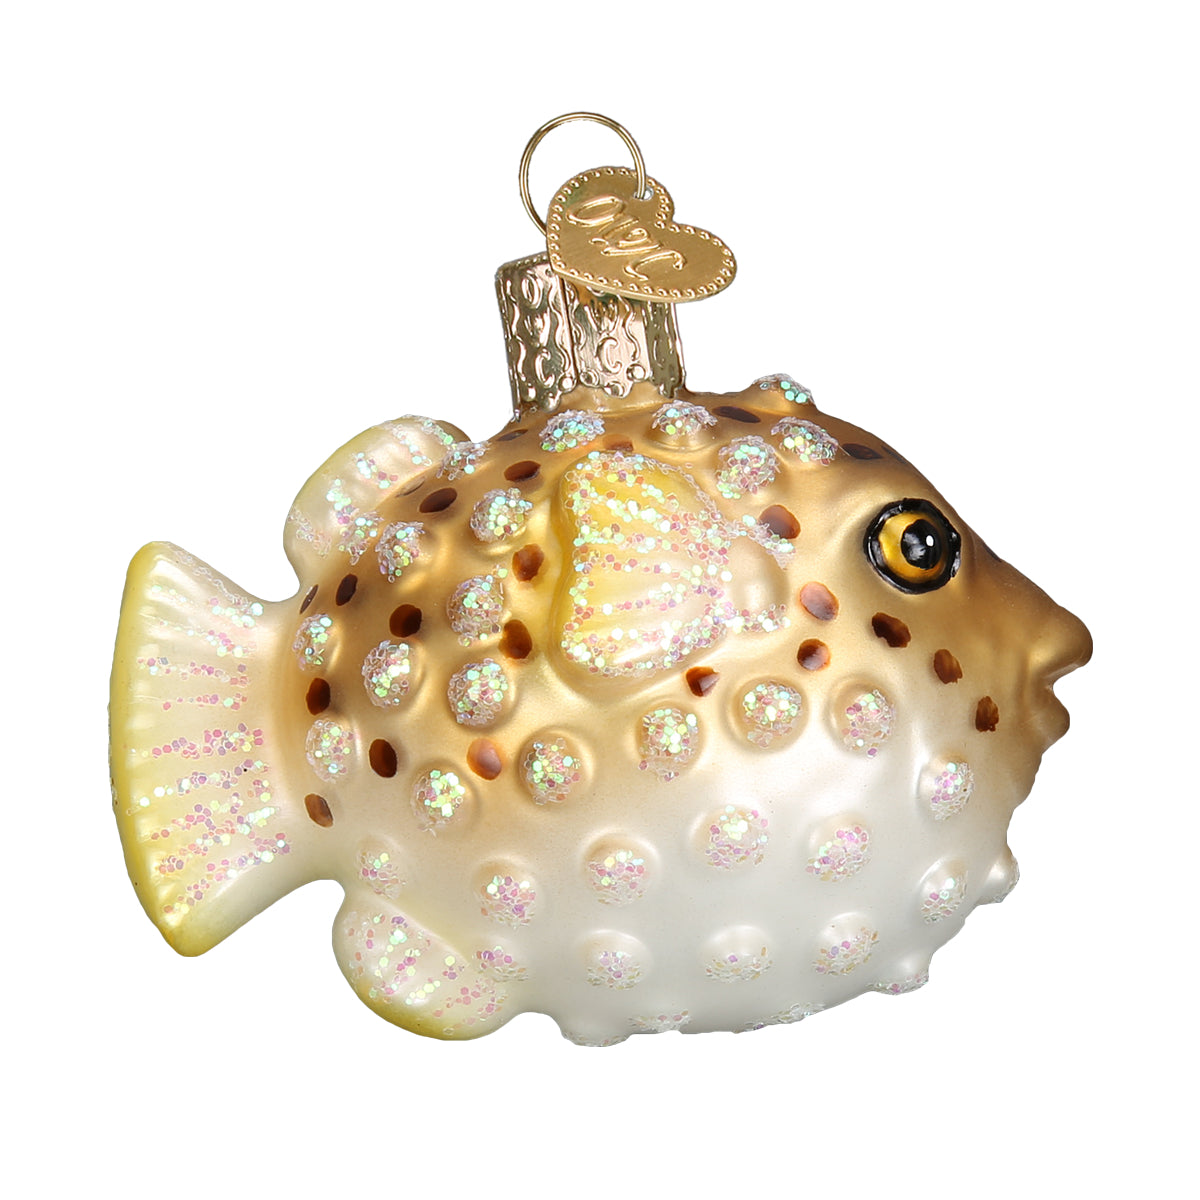 Pufferfish Ornament